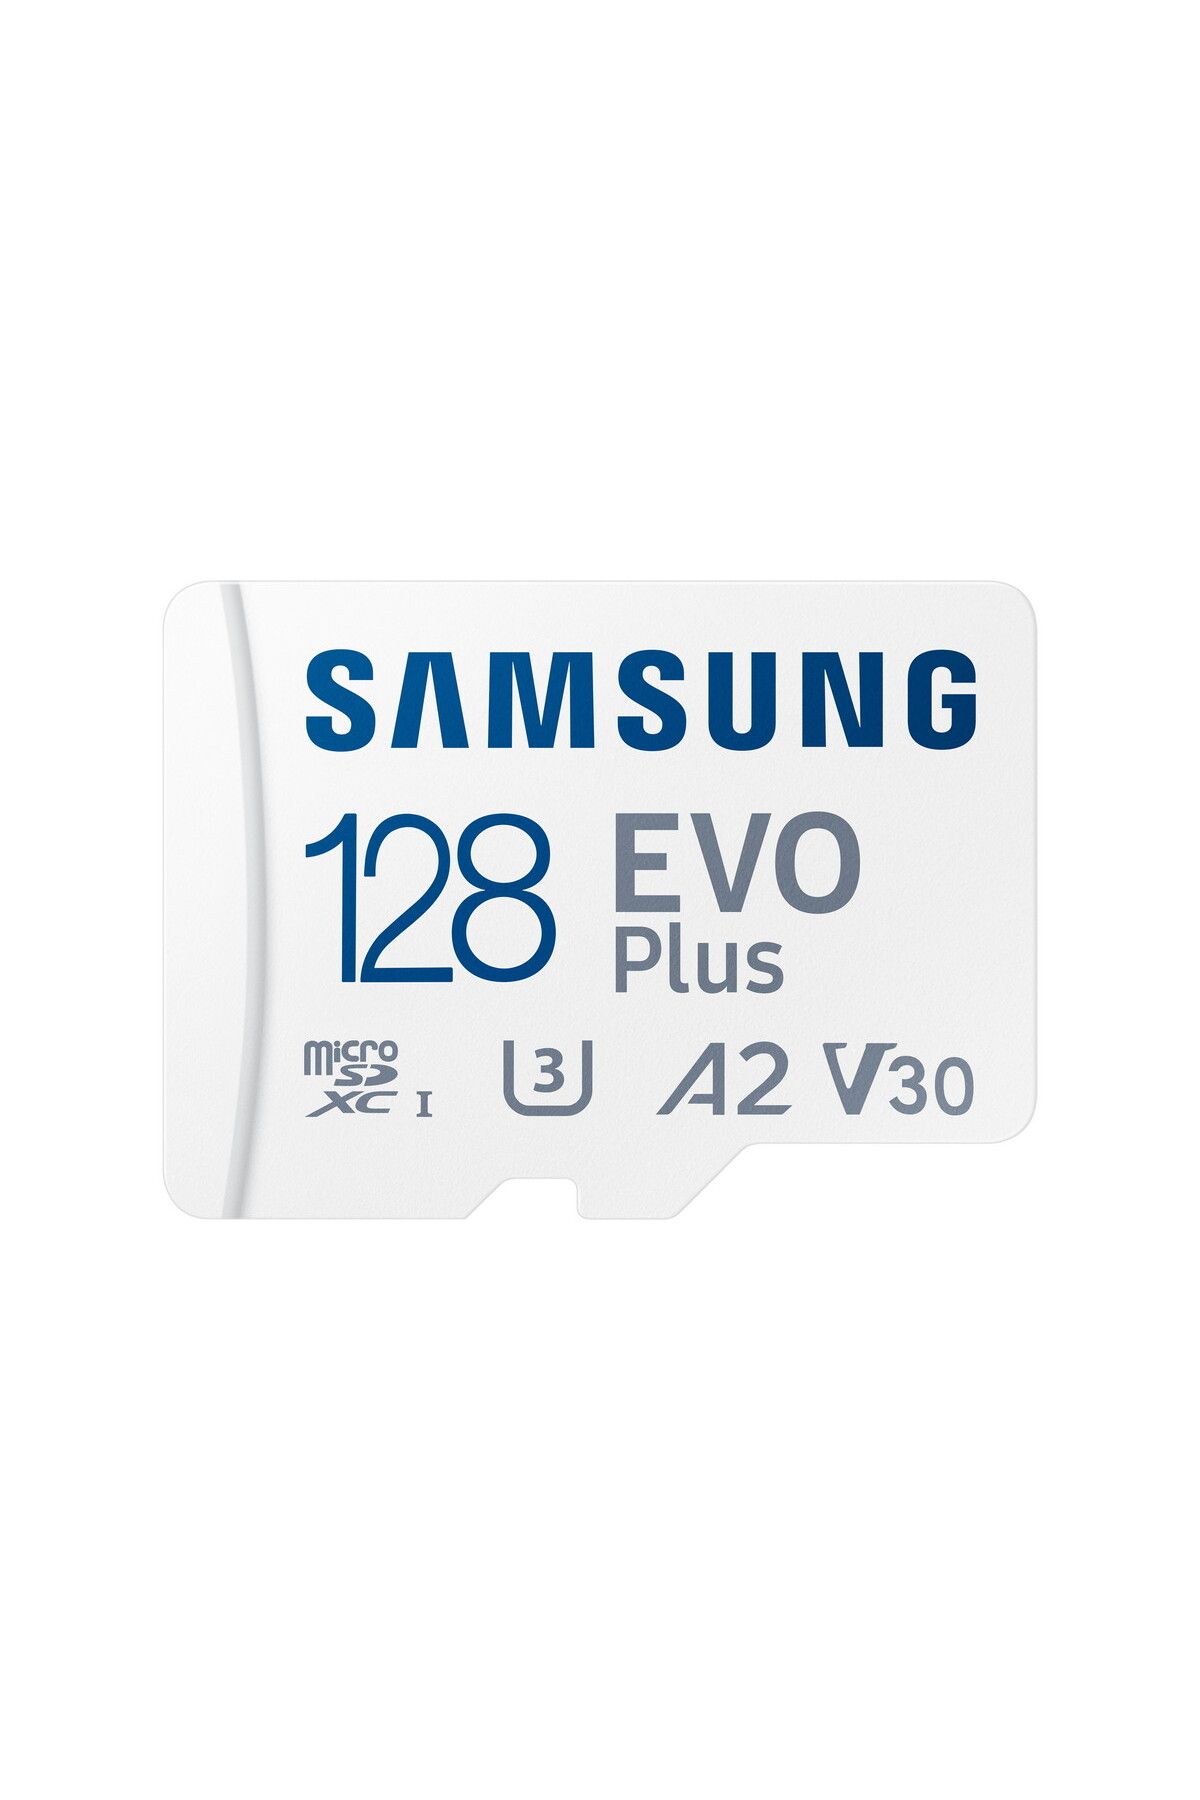 Samsung Evo Plus Microsd Hafıza Kartı 128 Gb